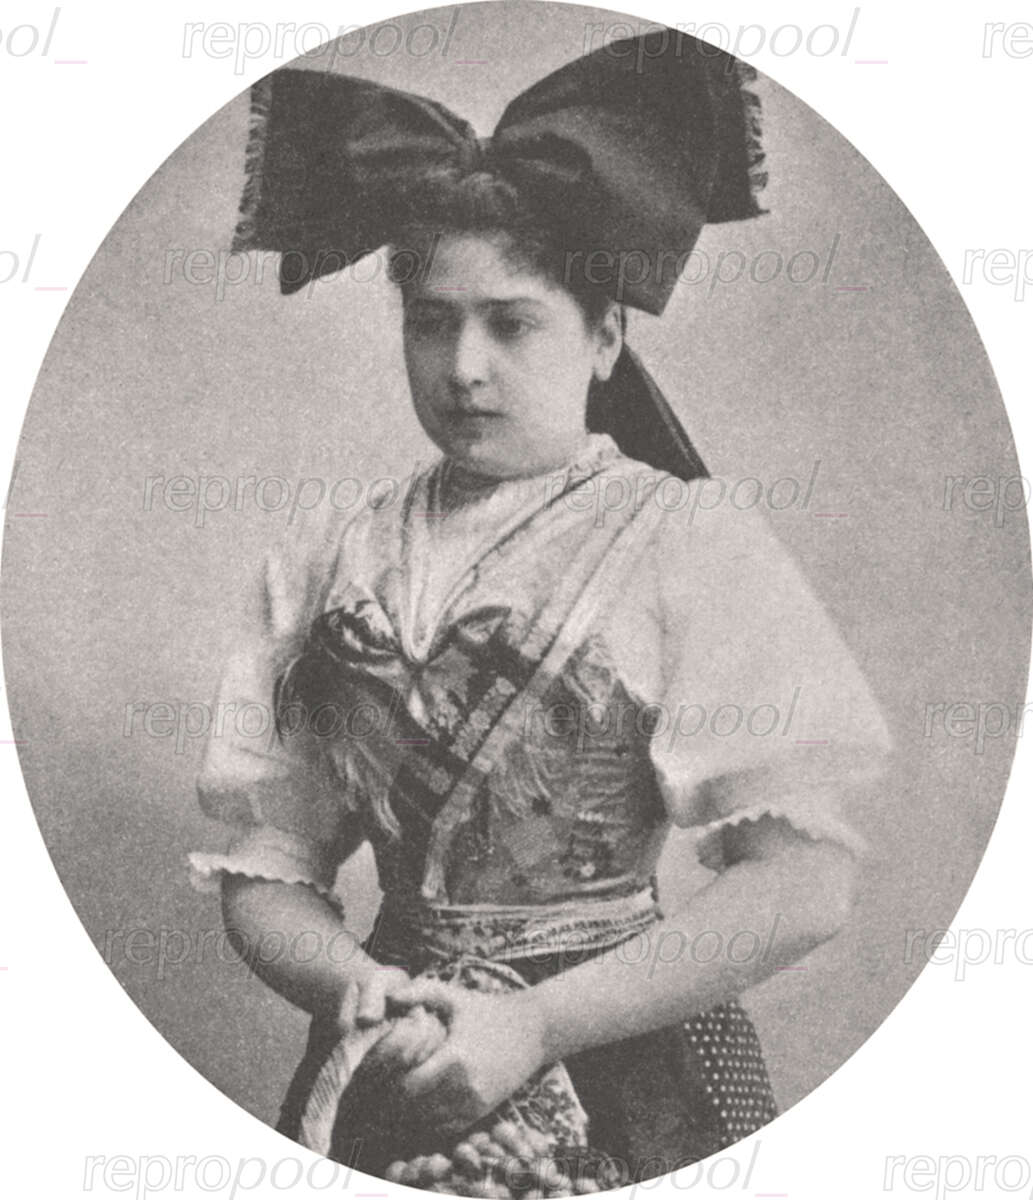 Lola Beth; Fotografie von unbekannter Hand (um 1880)